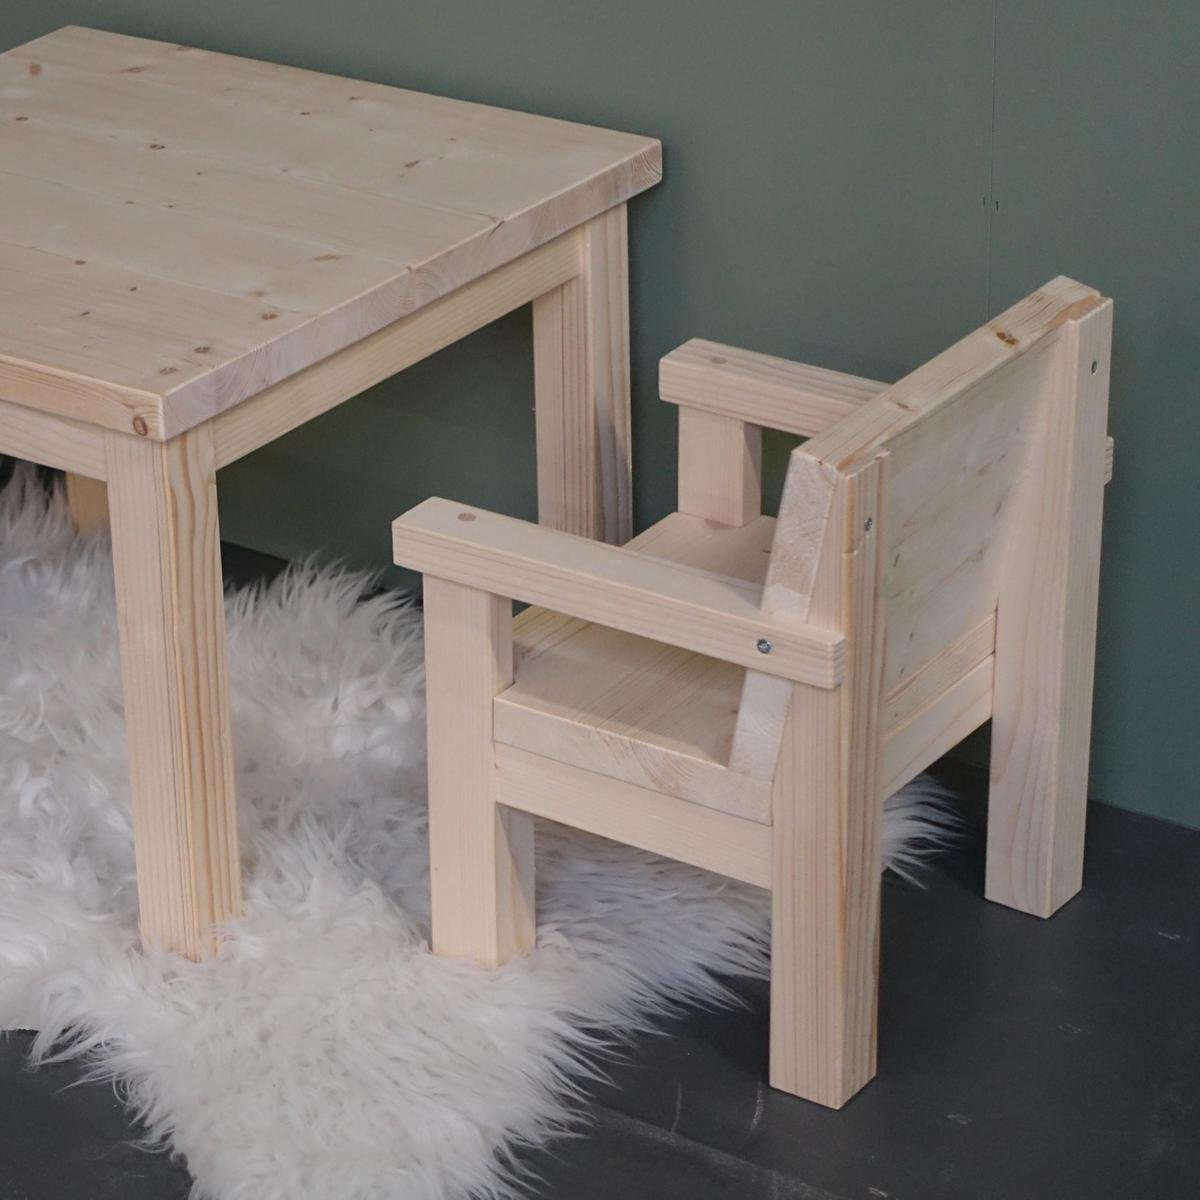 Voorbeeld bellen Zonder Klein houten kinderstoeltjes 1-3 jaar | stoeltje peuter van massief hout |  bol.com